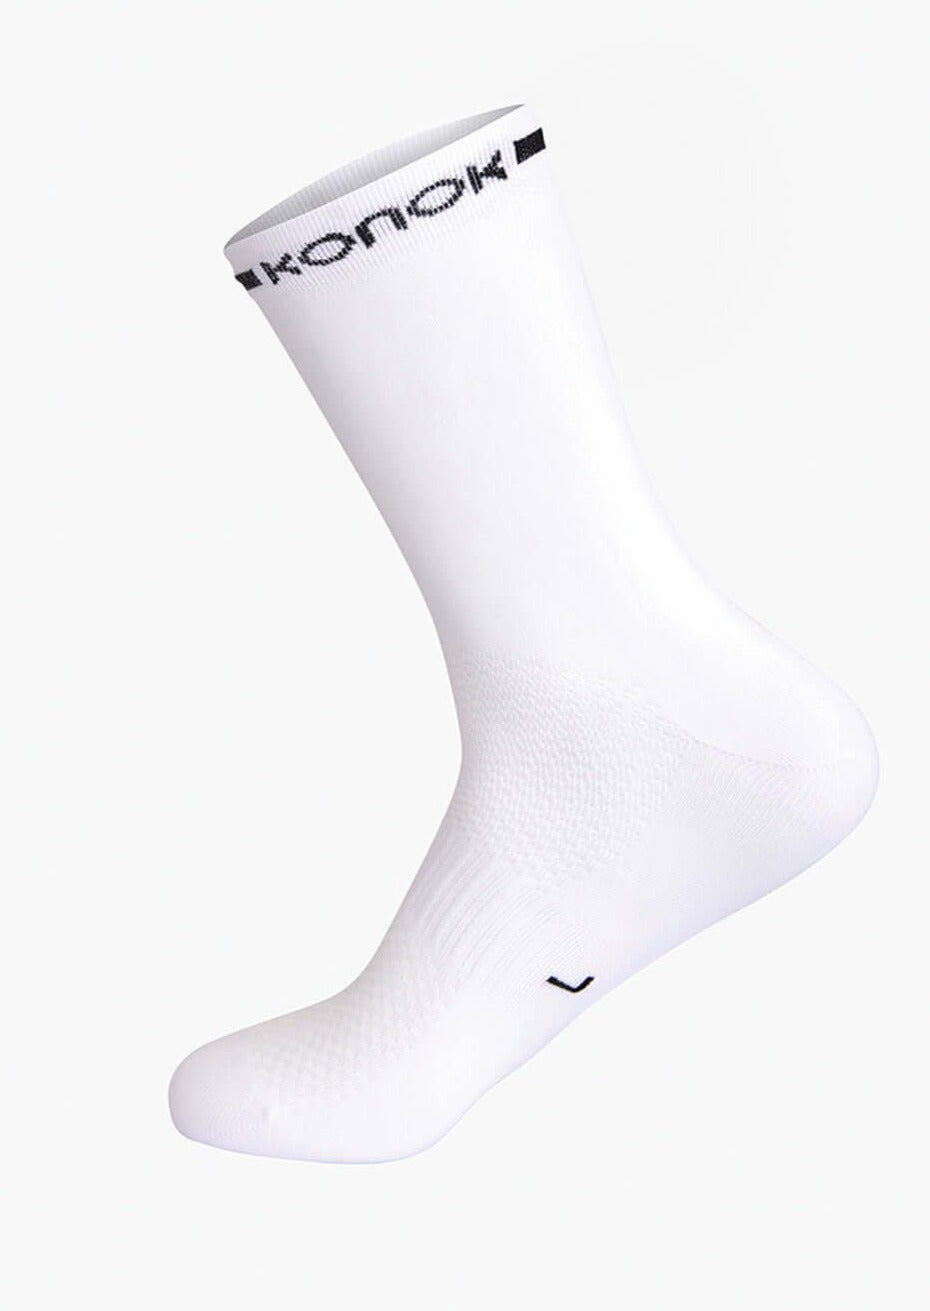 KONOK thin aero cycling socks, made in Italy